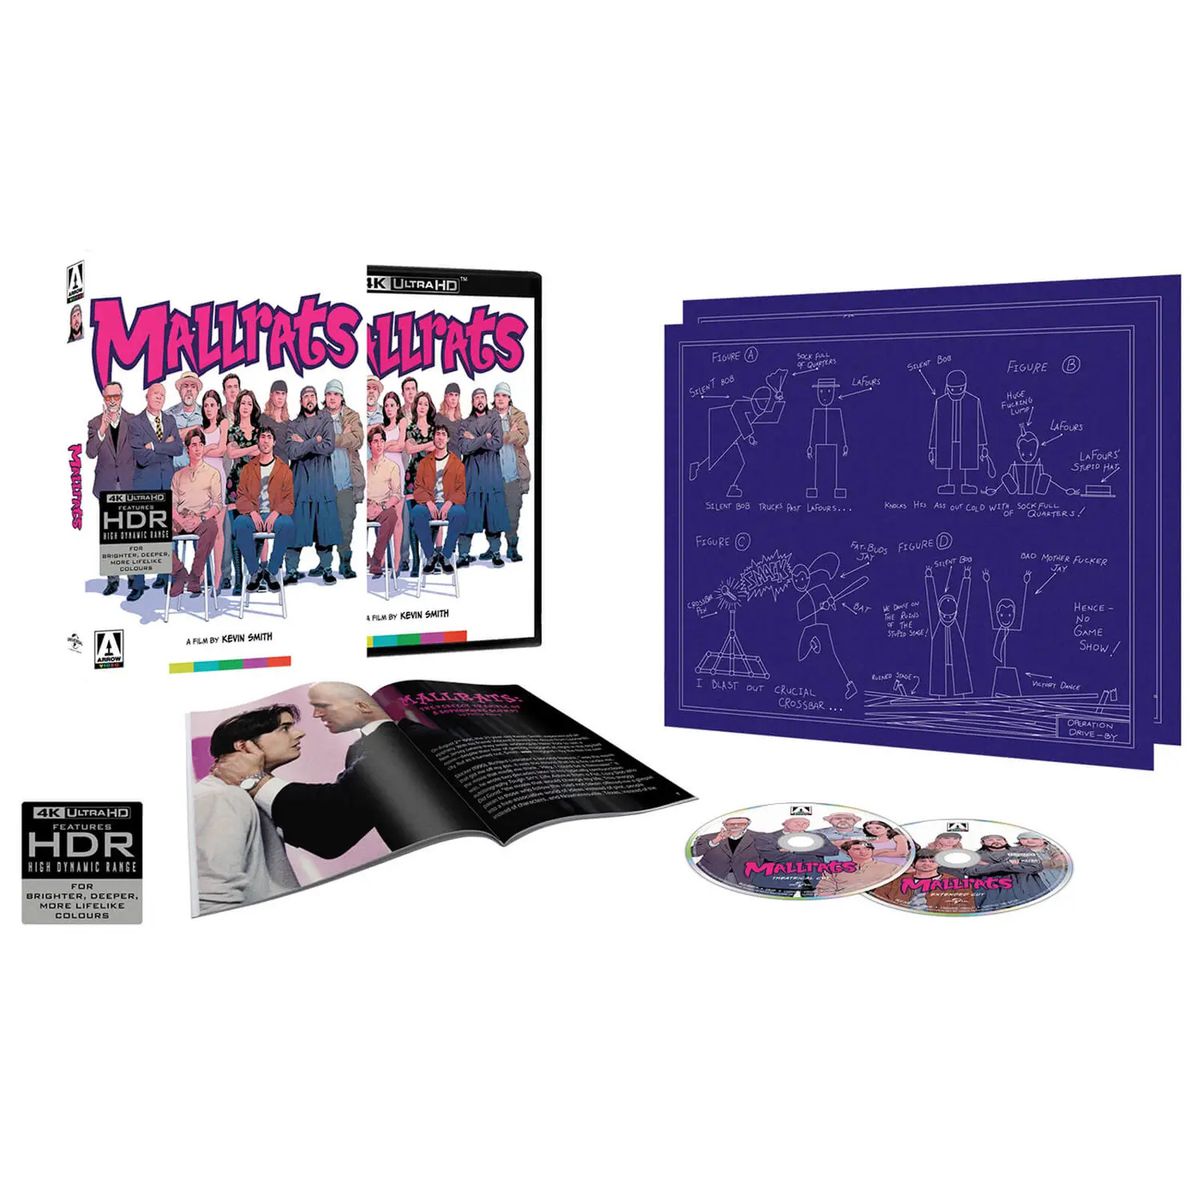 Una edición especial del video Mallrats from Arrow que incluye múltiples Blu-rays, un folleto y un diagrama de Jay y Silent Bob.